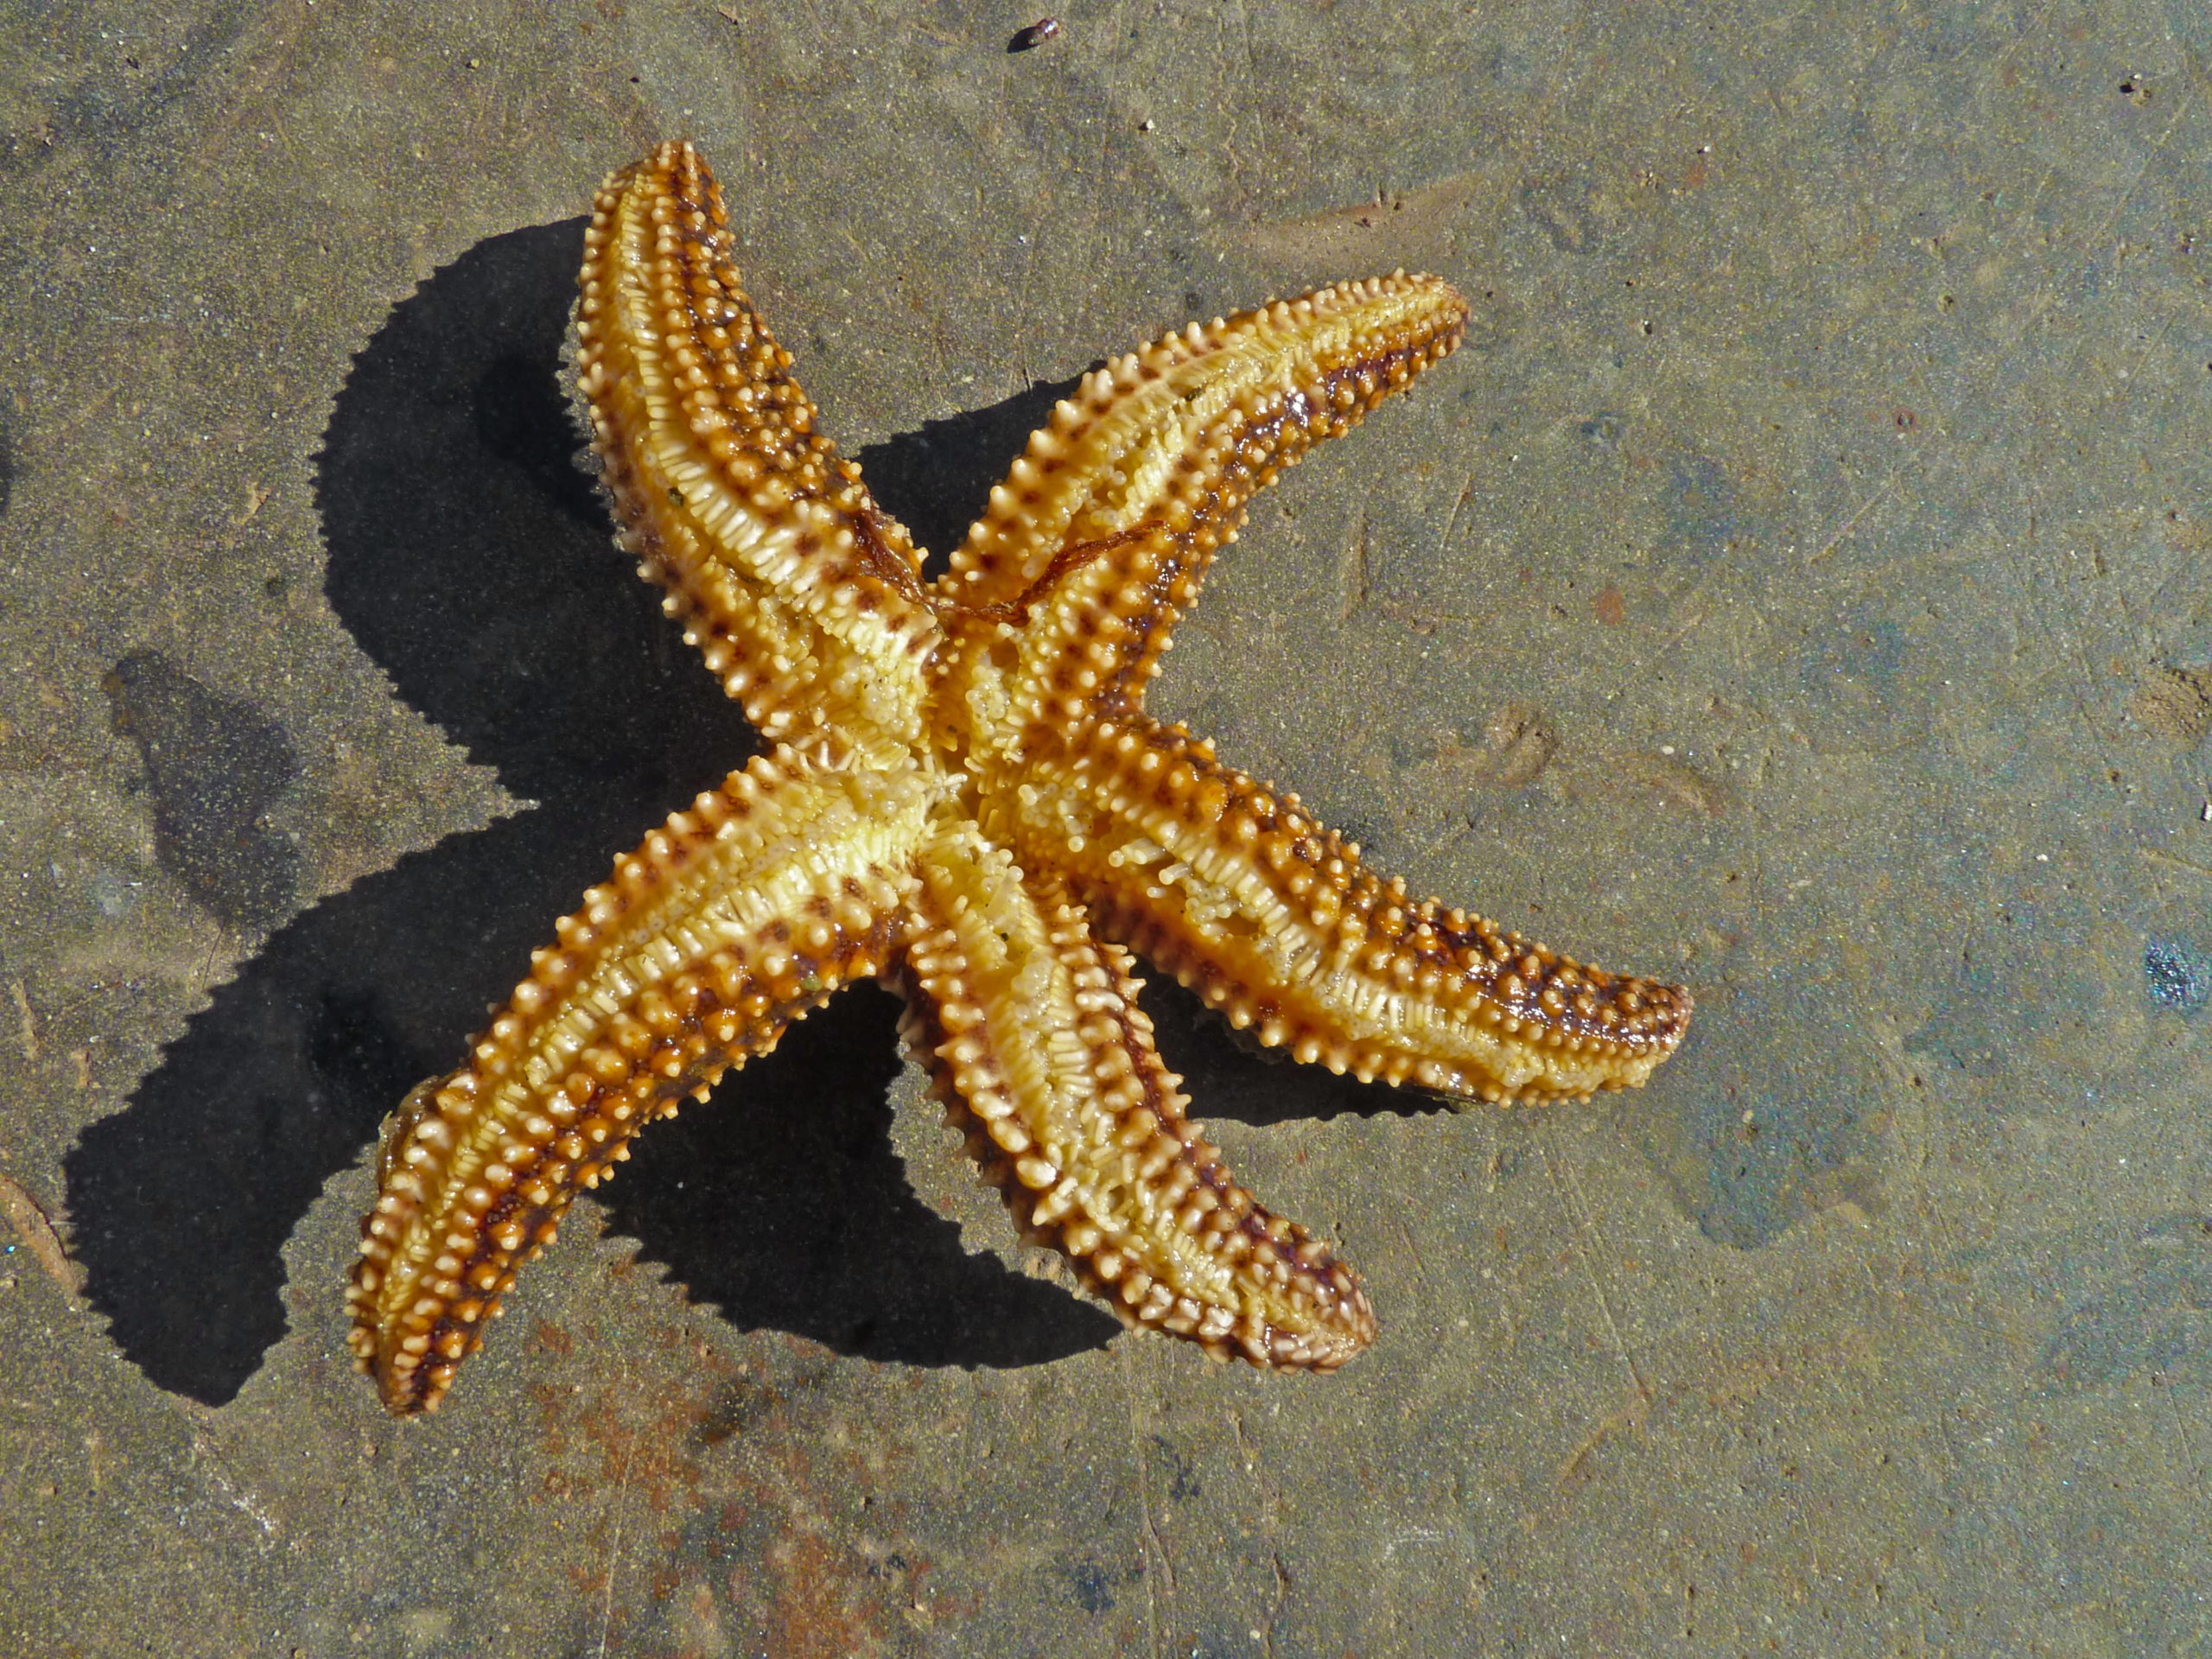 A sea star on the beach